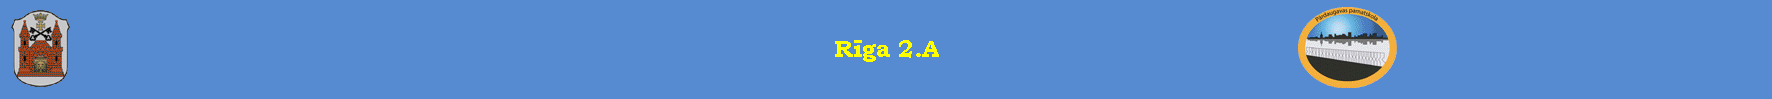 Rīga 2.A